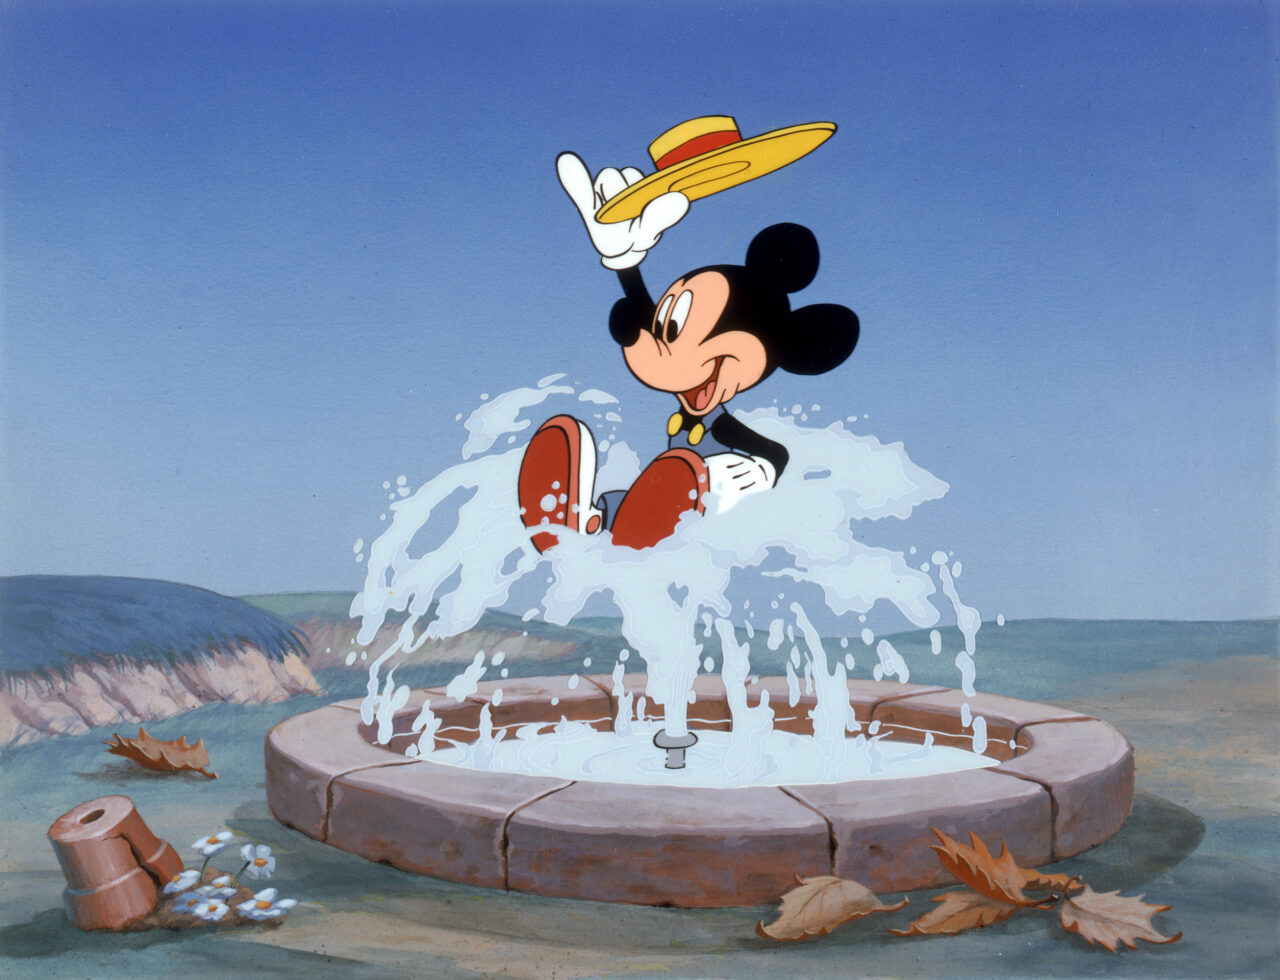 Mickey & Minnie 10 Classic Shorts - Volume 1 still (Disney)